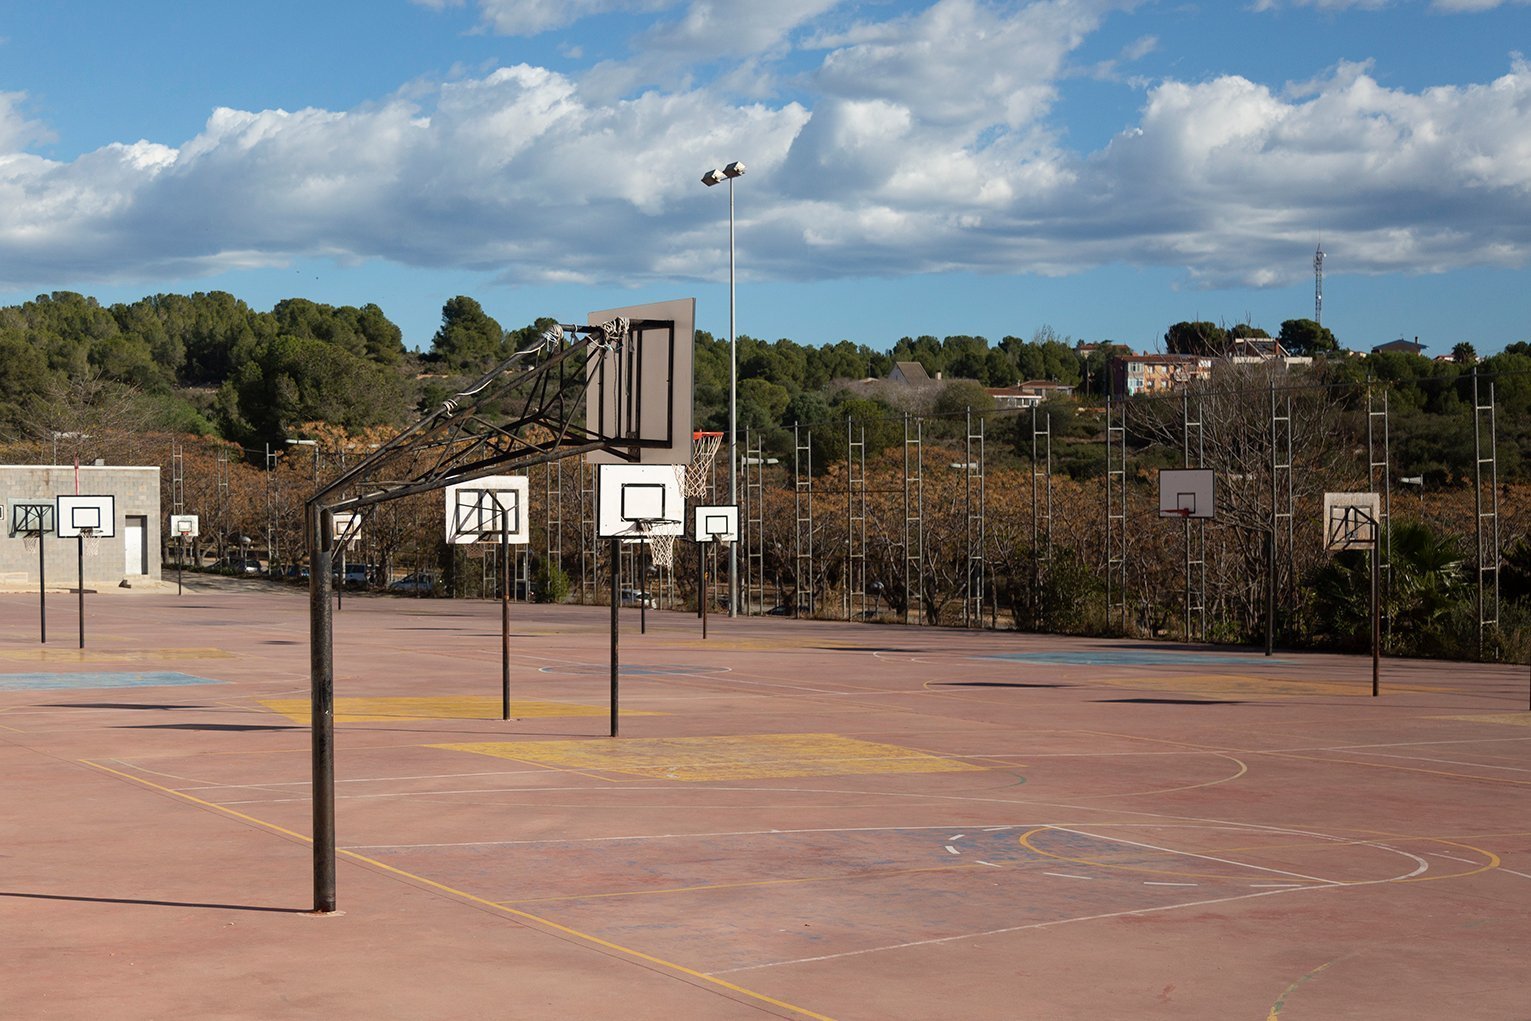 Pistes-basquet-exteriors-1.jpg